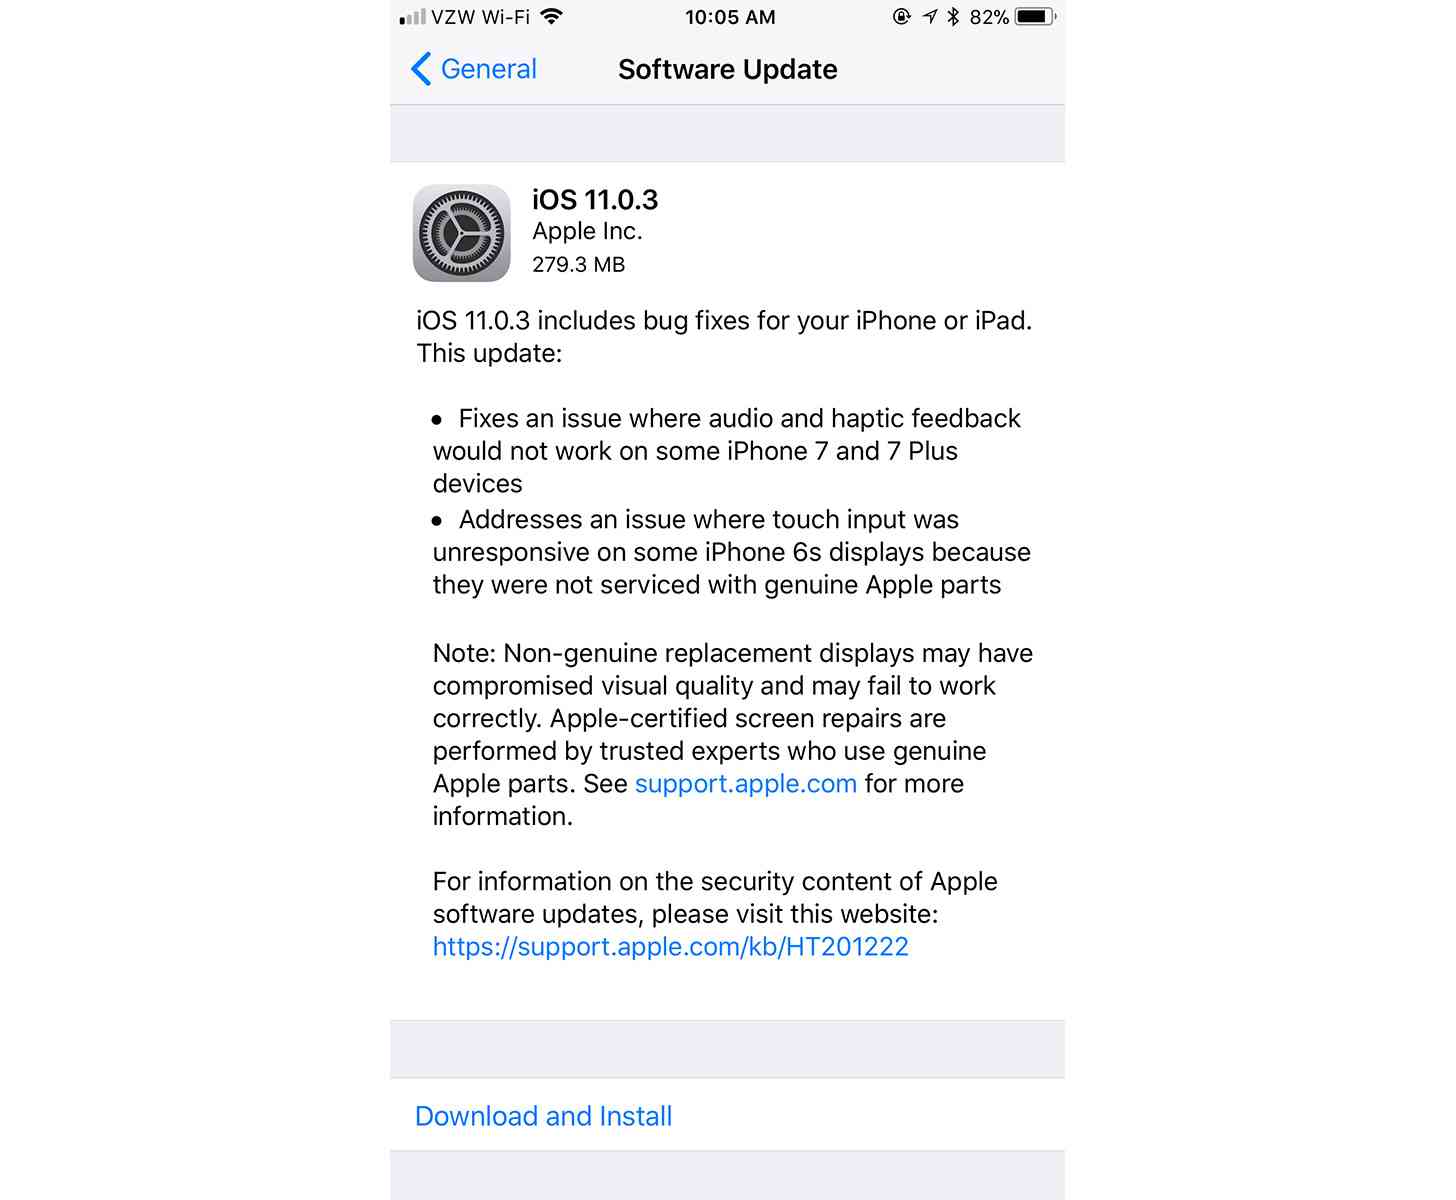 Apple iOS 11.0.3 update